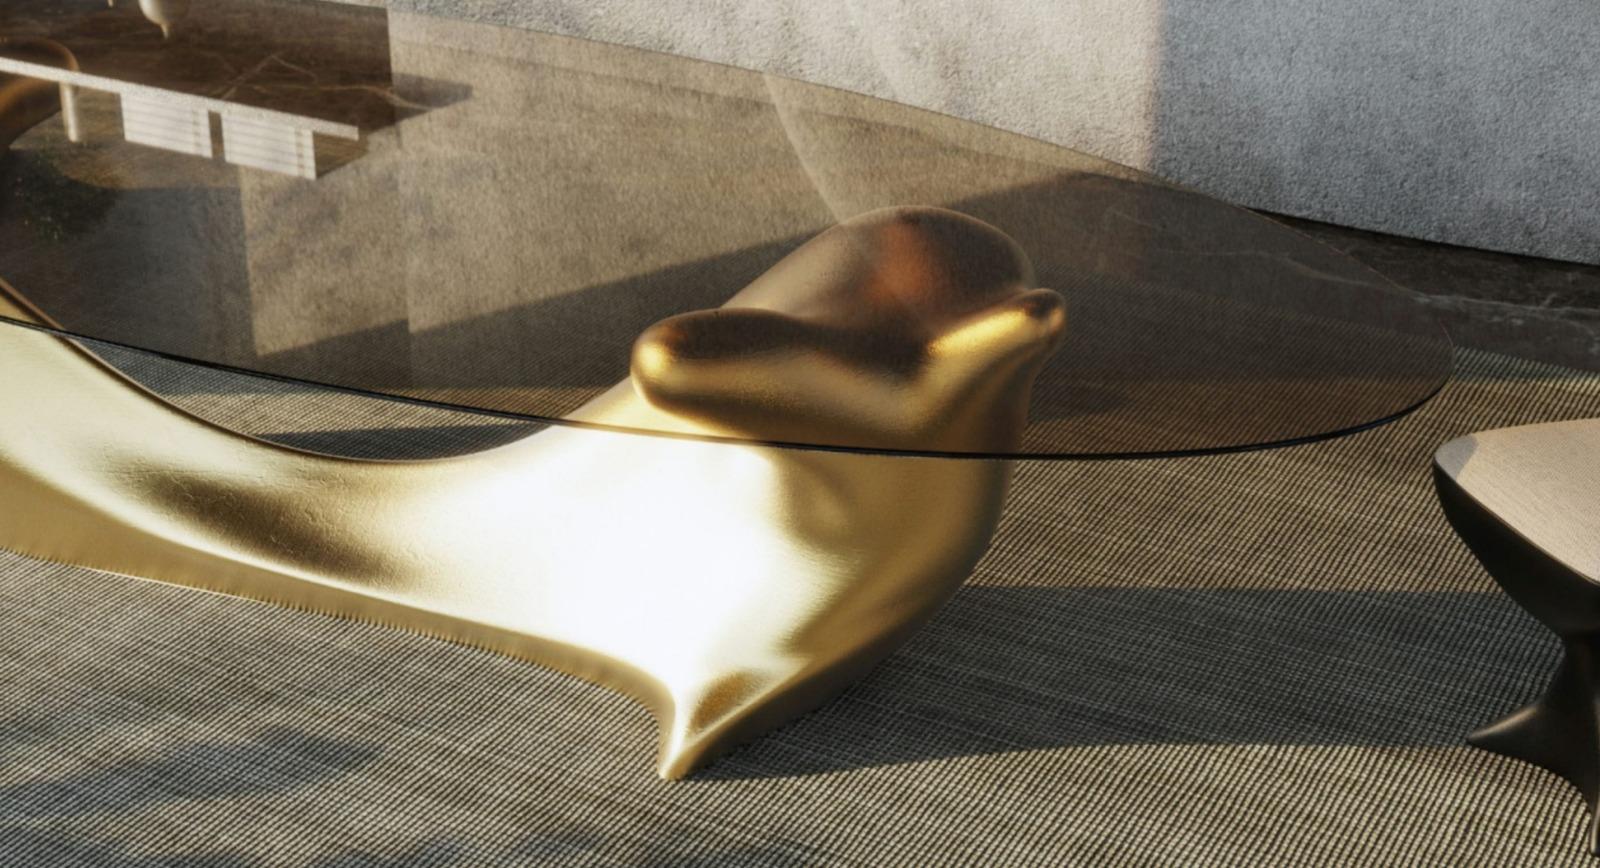 TABLE À MANGER New Design  Base en feuille d'or, plateau en verre bronze

Dimensions :
350 x 140 x 75 cm
137.8 x 55.1 x 29.5 in
Sièges :
10 à 12 ans

Une véritable pièce d'apparat qui incarne la grandeur et l'élégance. Dotée d'un grand plateau en